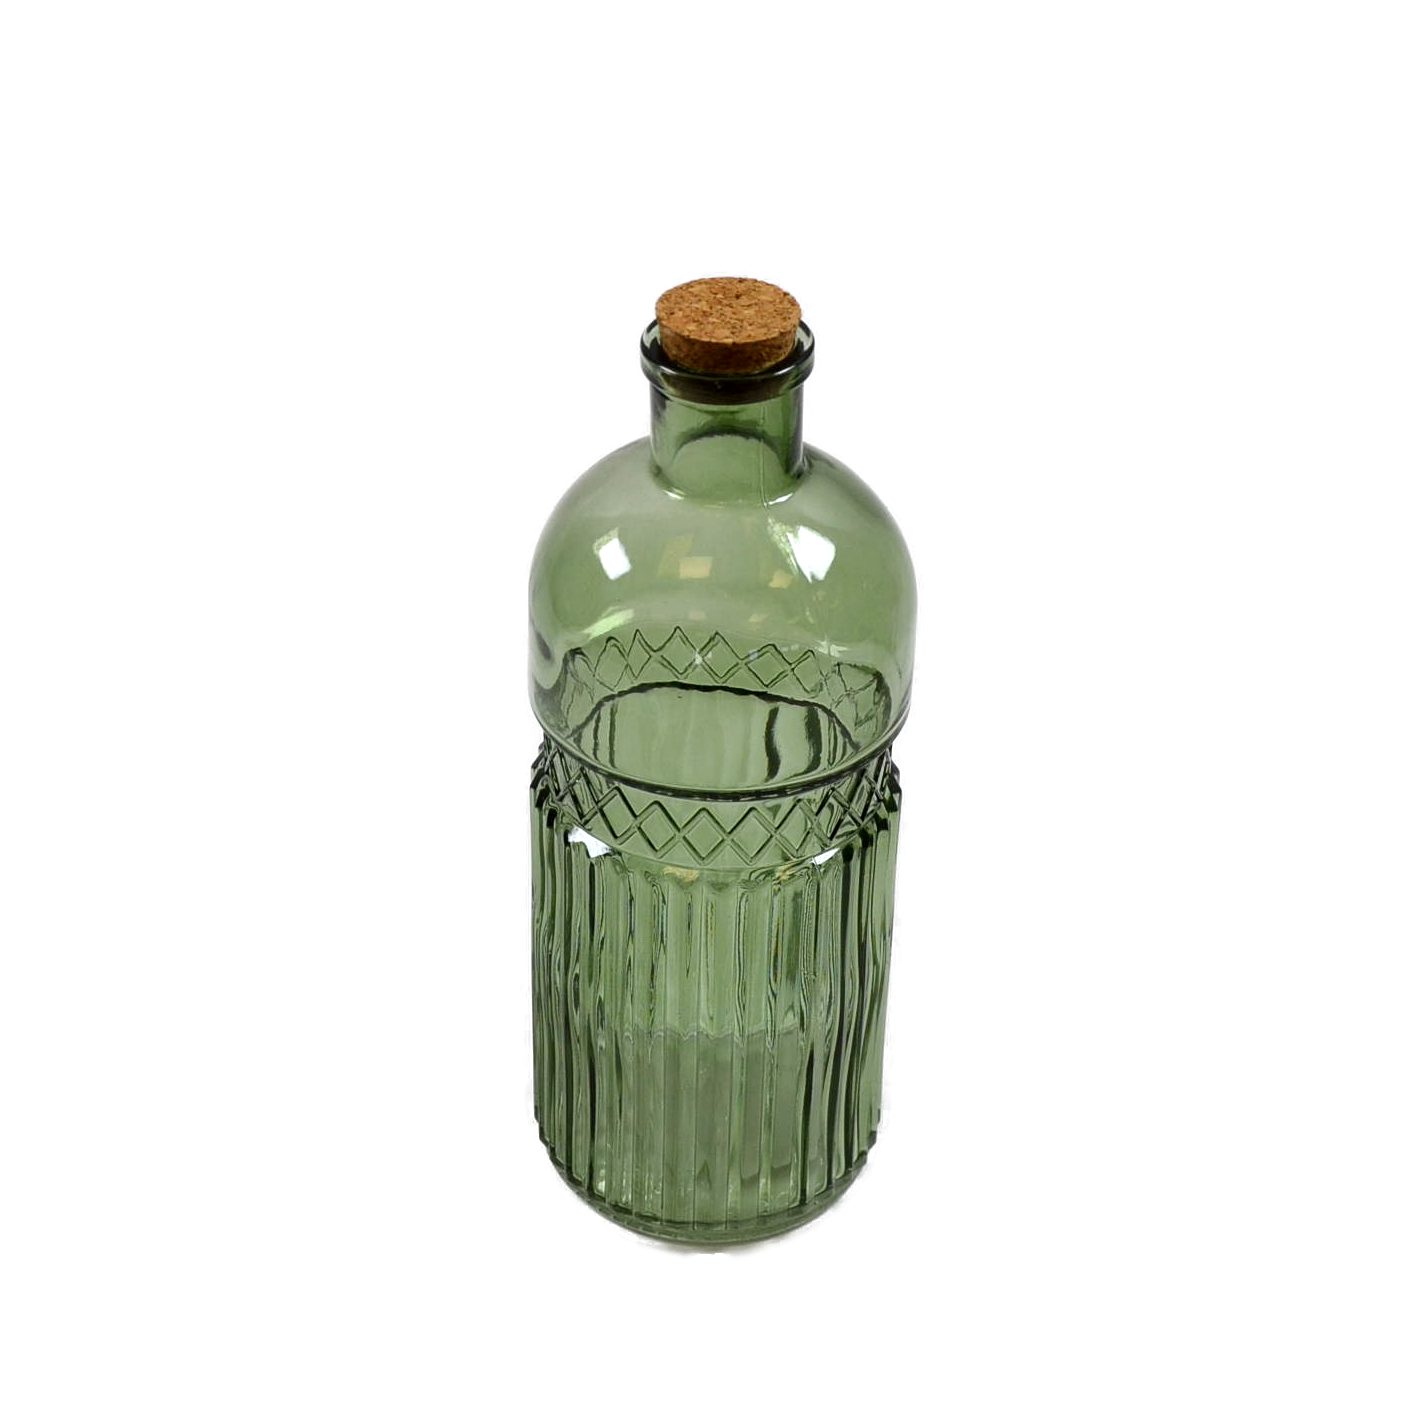 B&S Dekofigur Deko Flasche Glas grün 9x24 cm